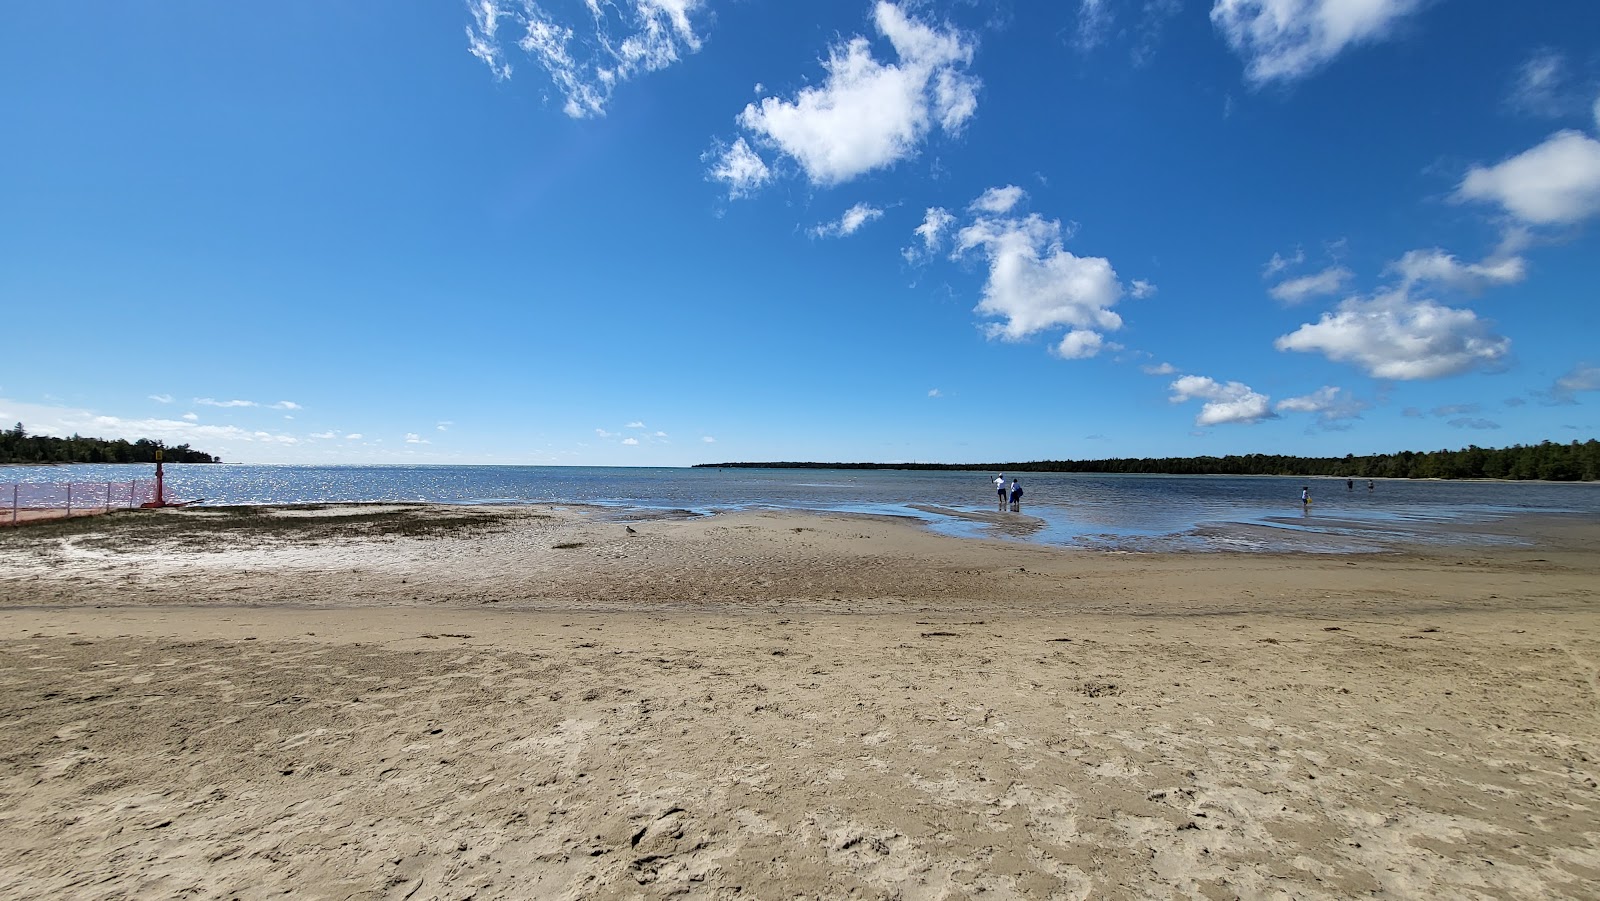 Fotografie cu Singing Sands cu o suprafață de nisip strălucitor